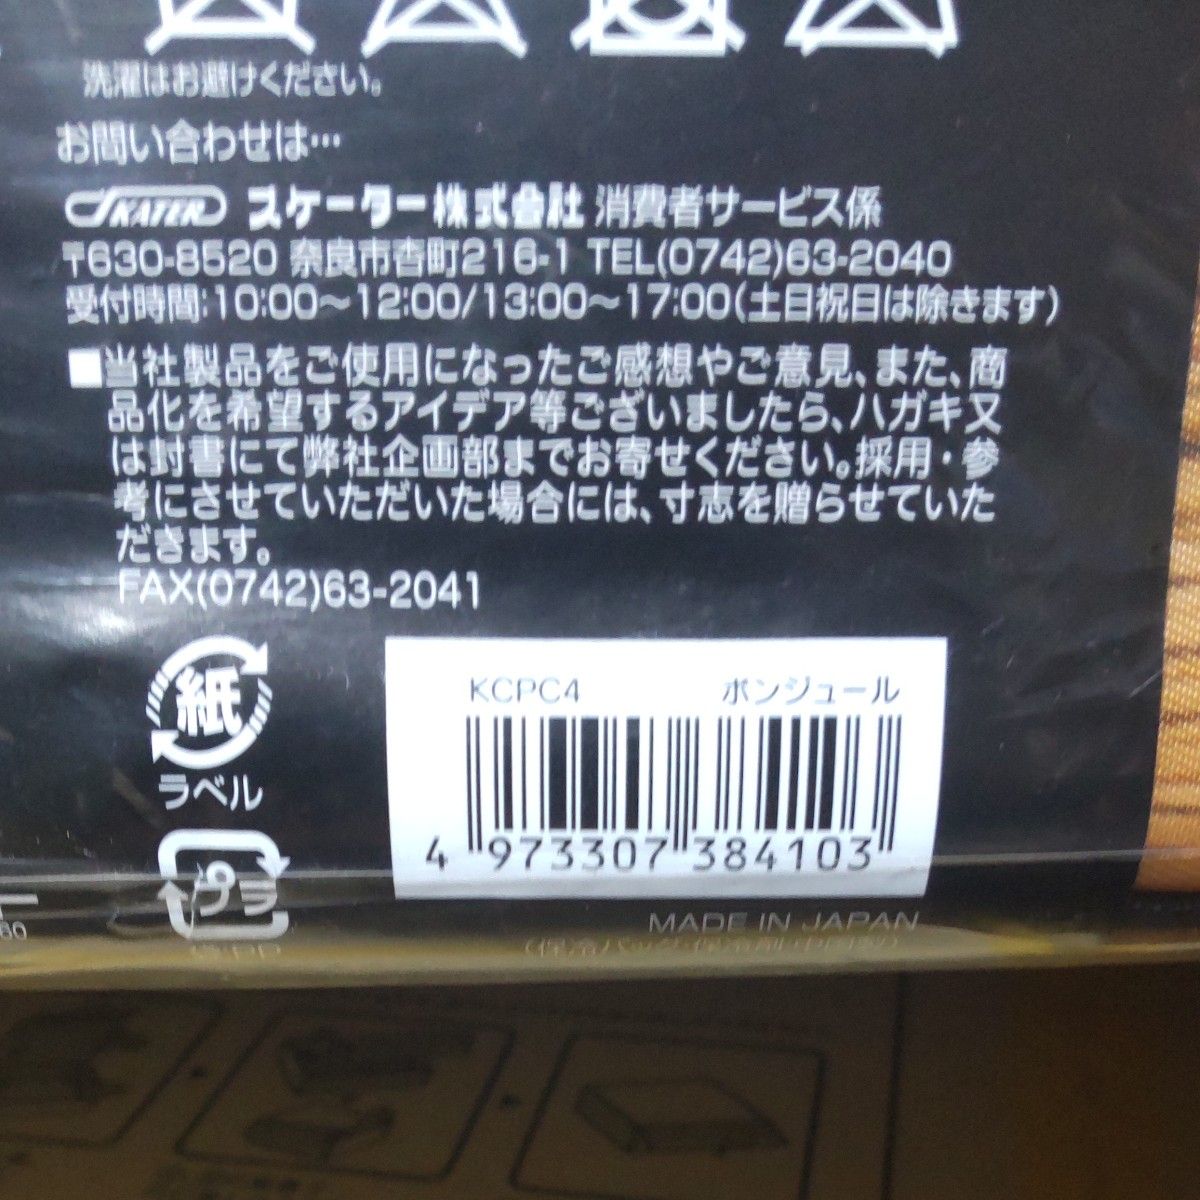 スケーター 行楽弁当箱 保冷バッグ付 ボンジュール 大型 日本製 KCPC4